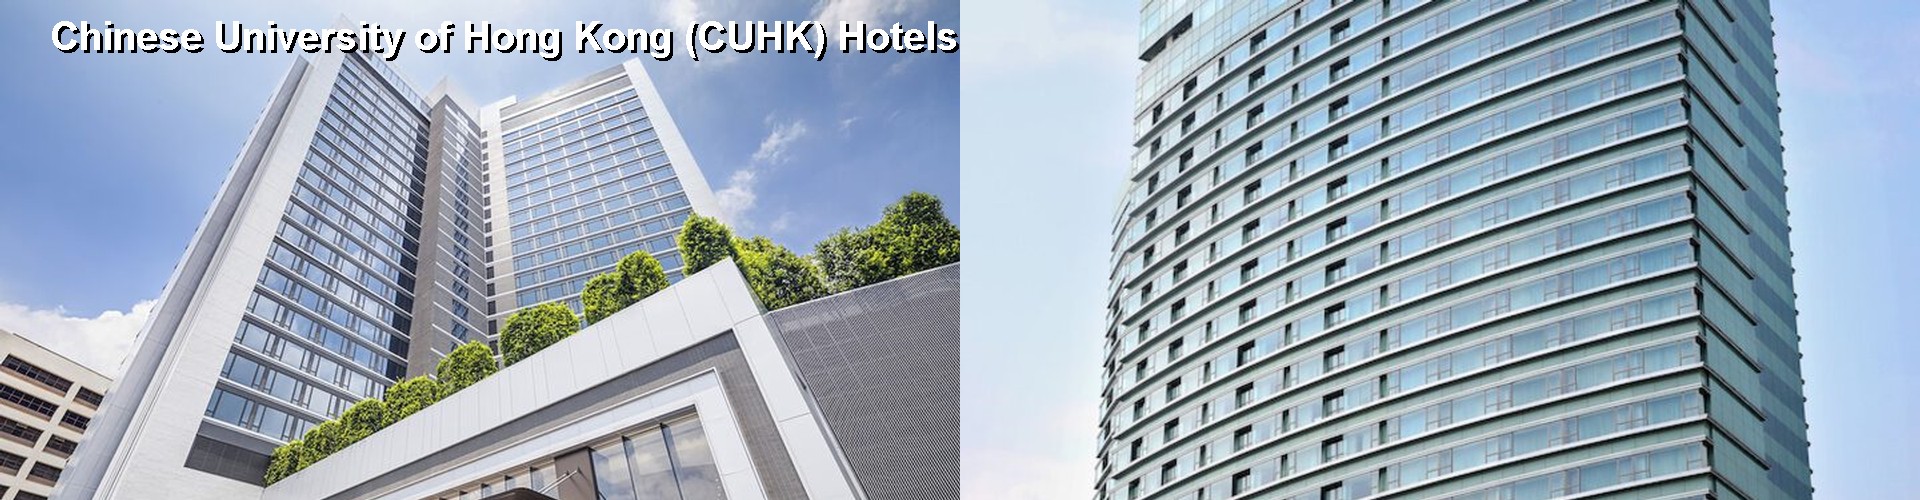 5 Best Hotels near Chinese University of Hong Kong (CUHK)